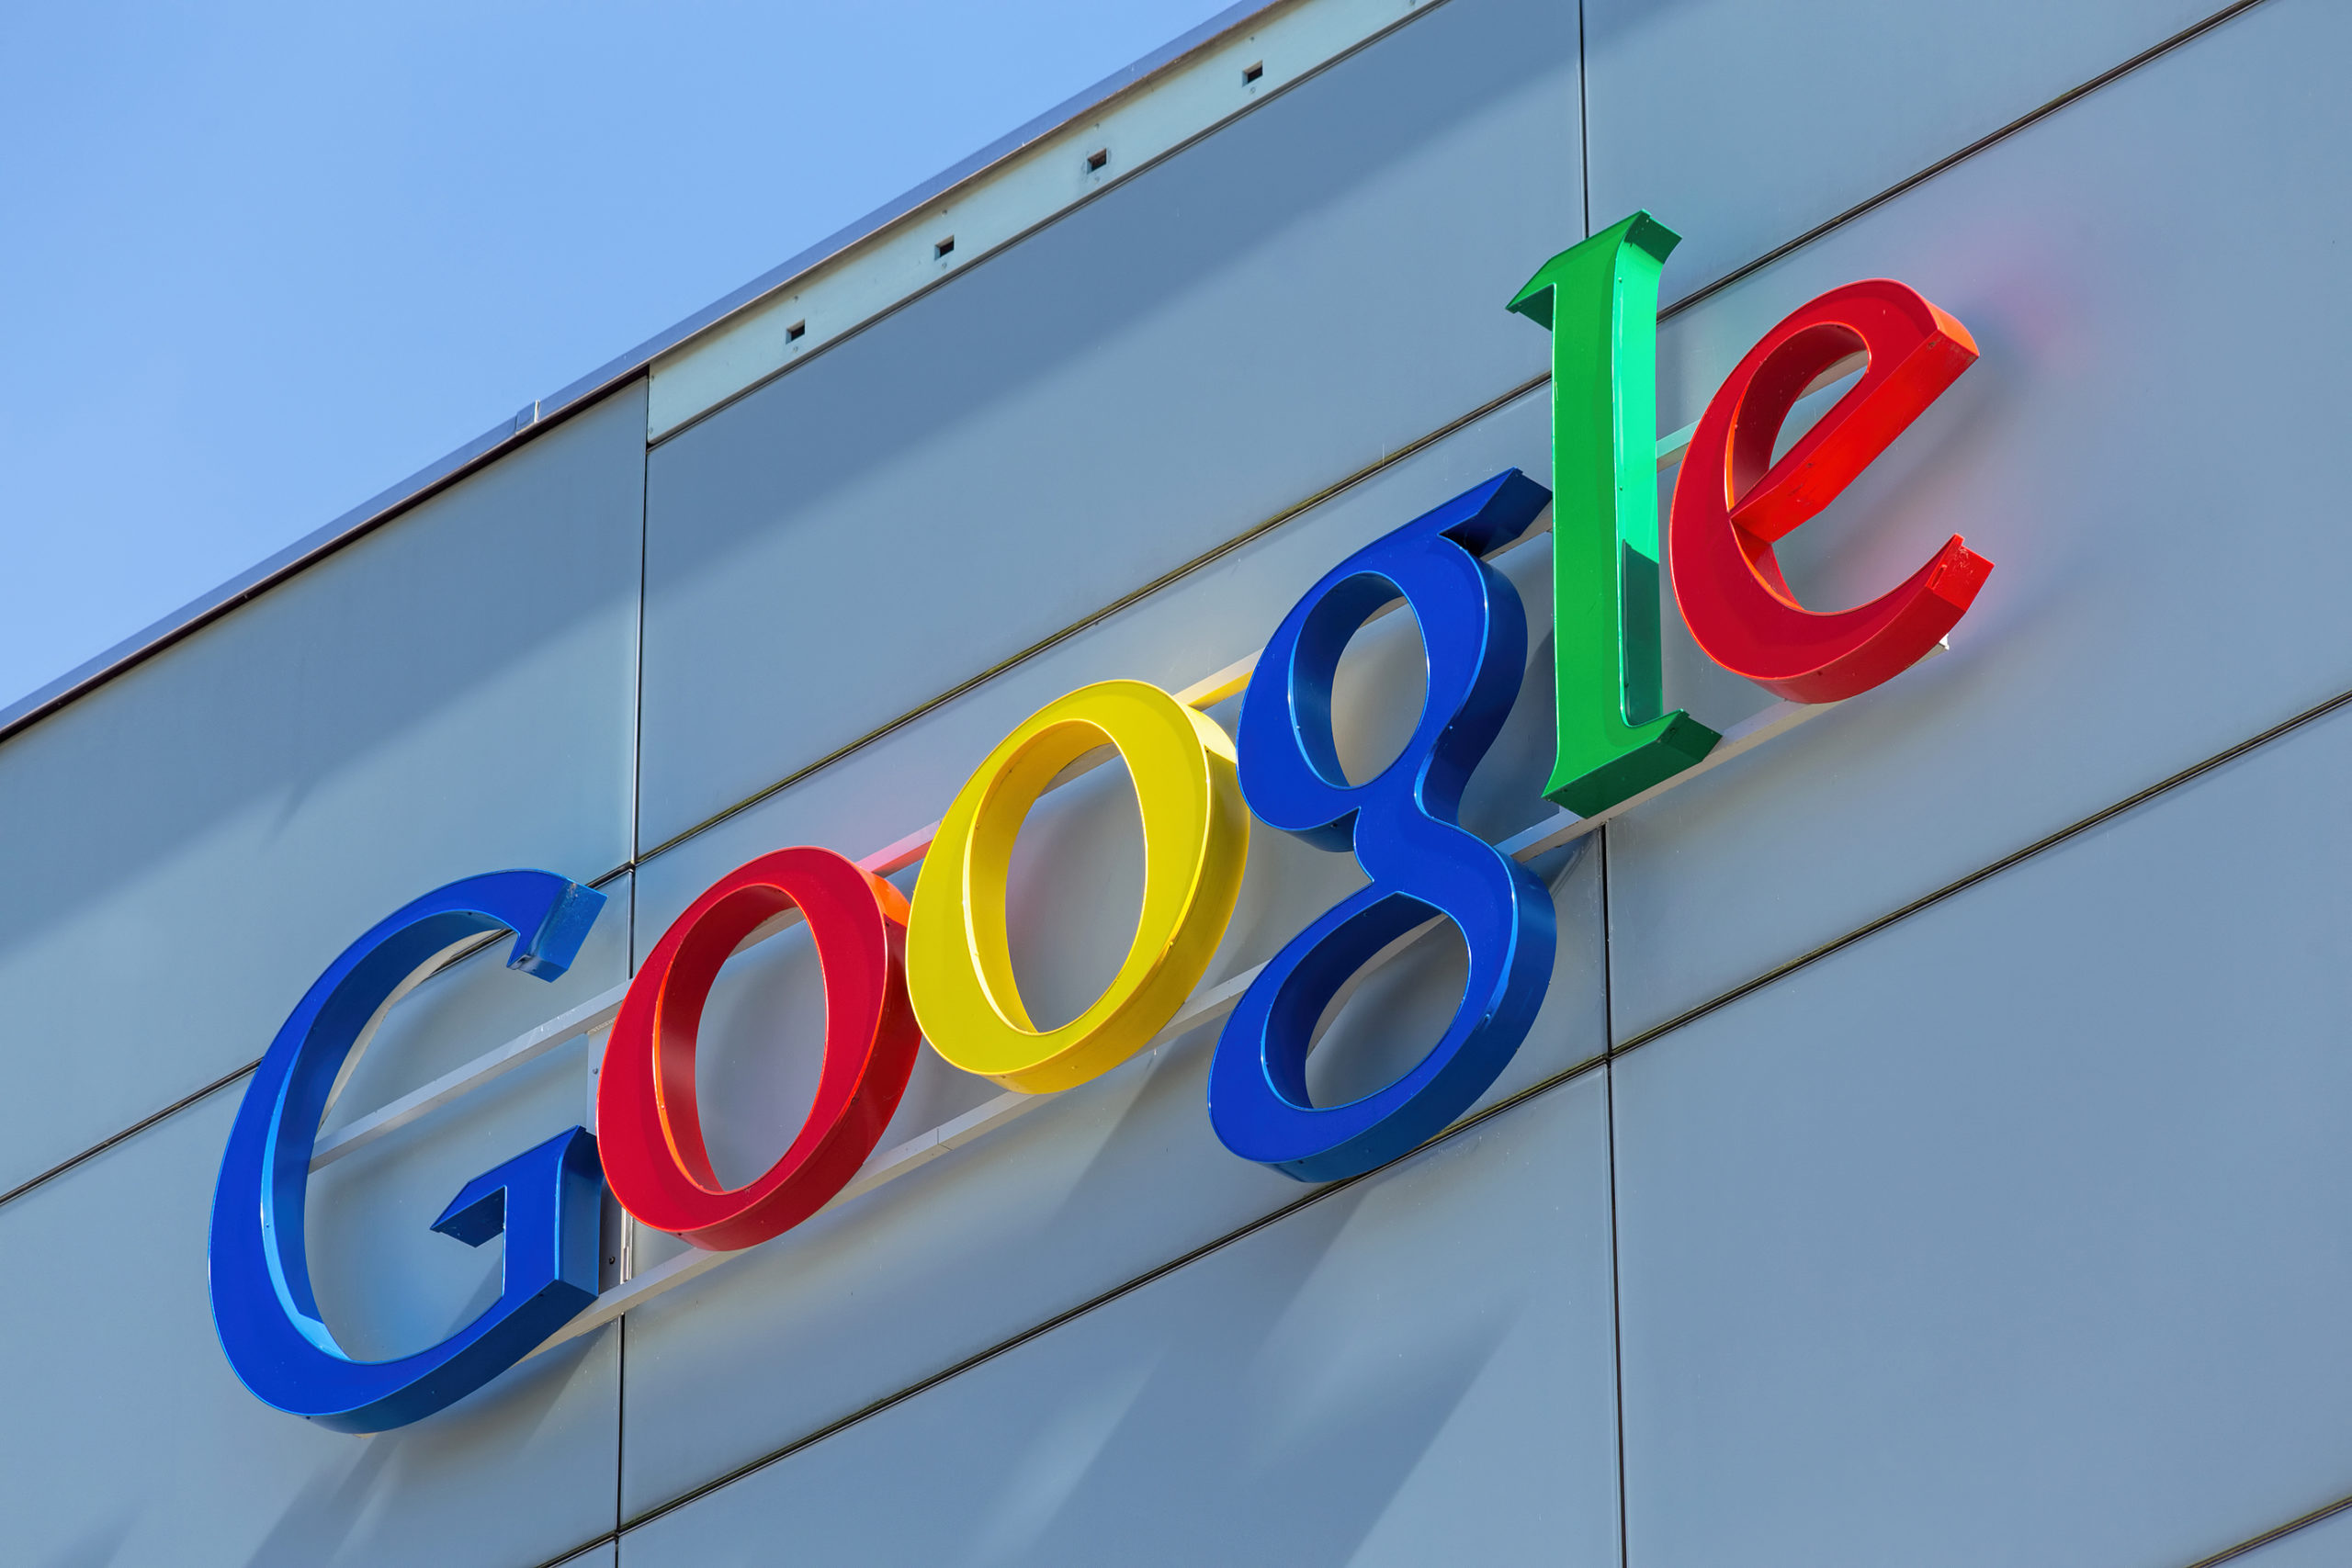 جوجل تسمح للمنصات الإعلانية المنافسة بتشغيل إعلانات تجارية على يوتيوب